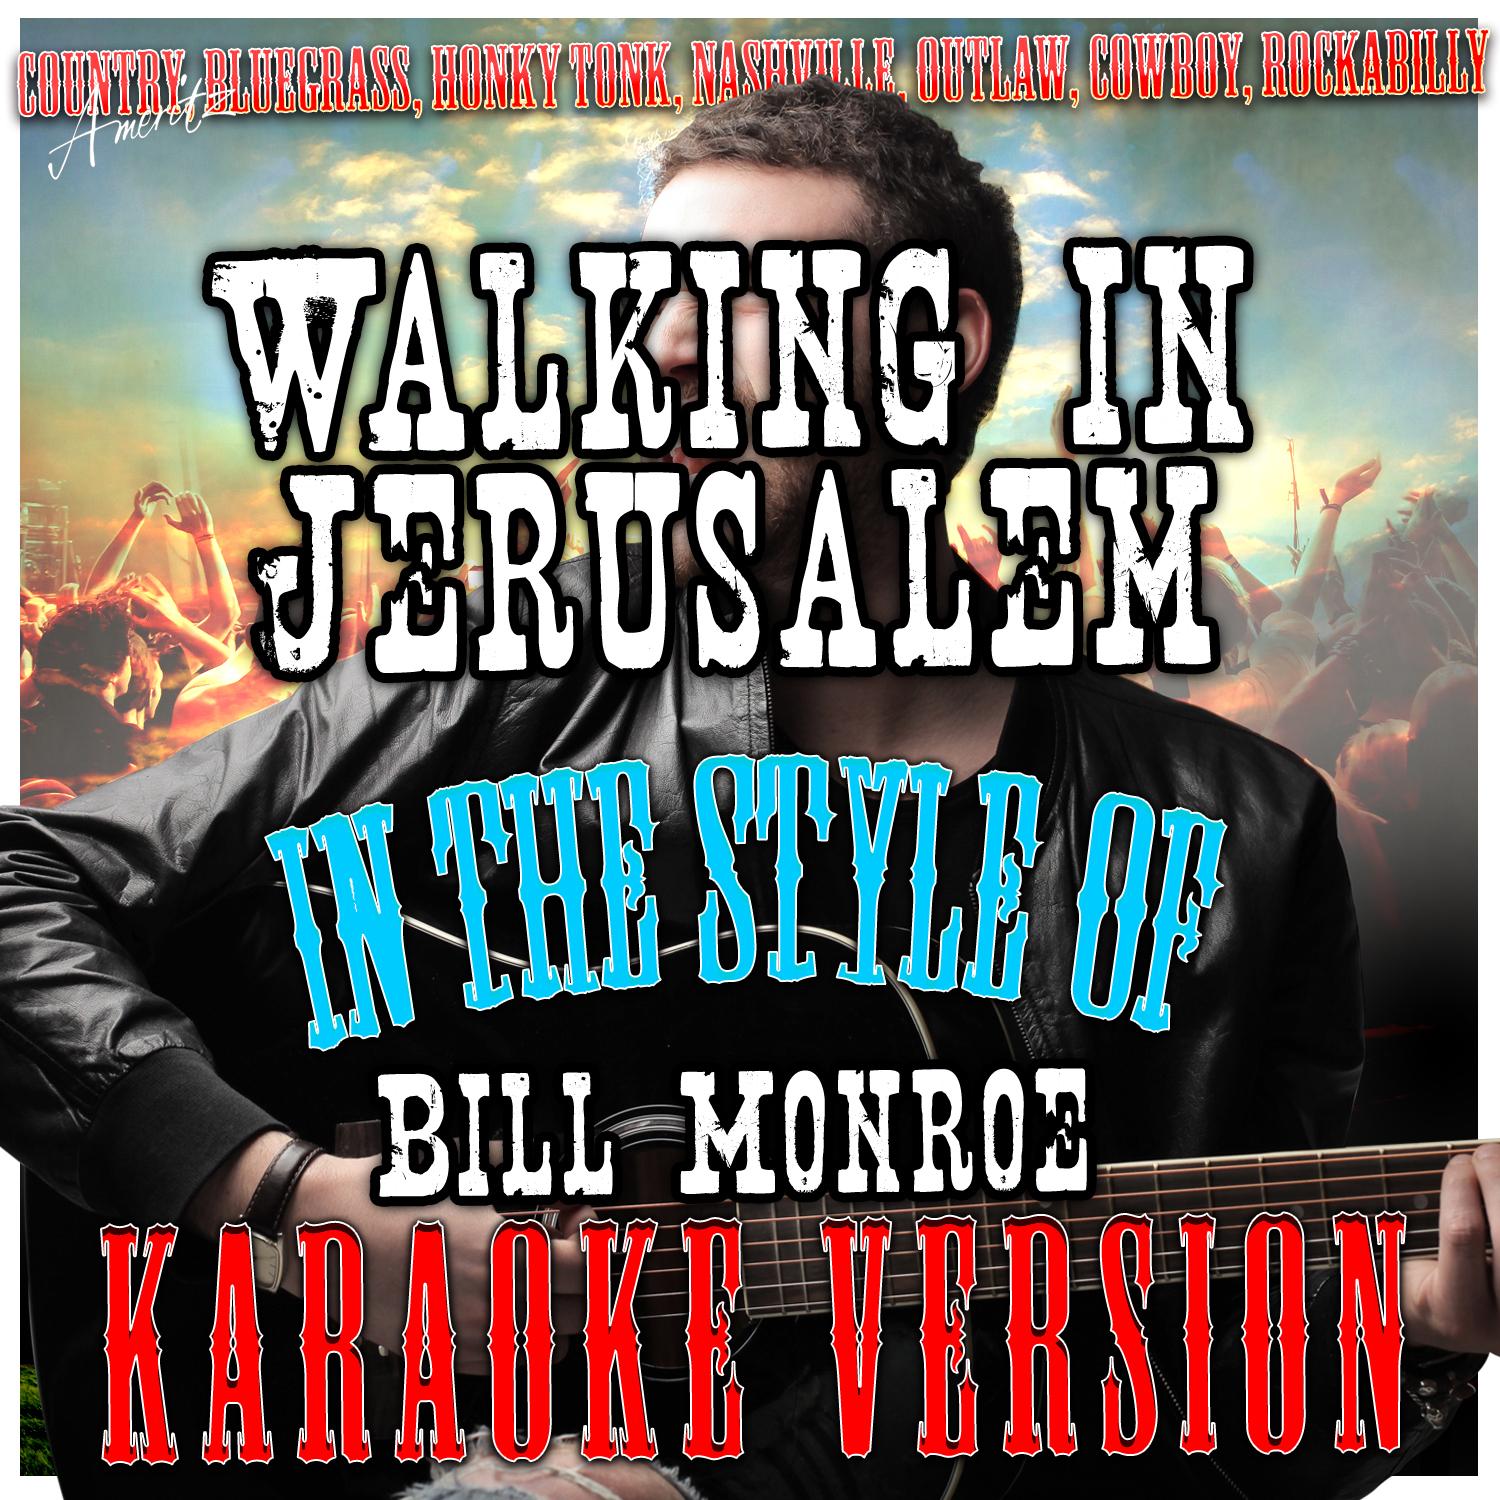 Walking in Jerusalem (In the Style of Bill Monroe) [Karaoke Version]